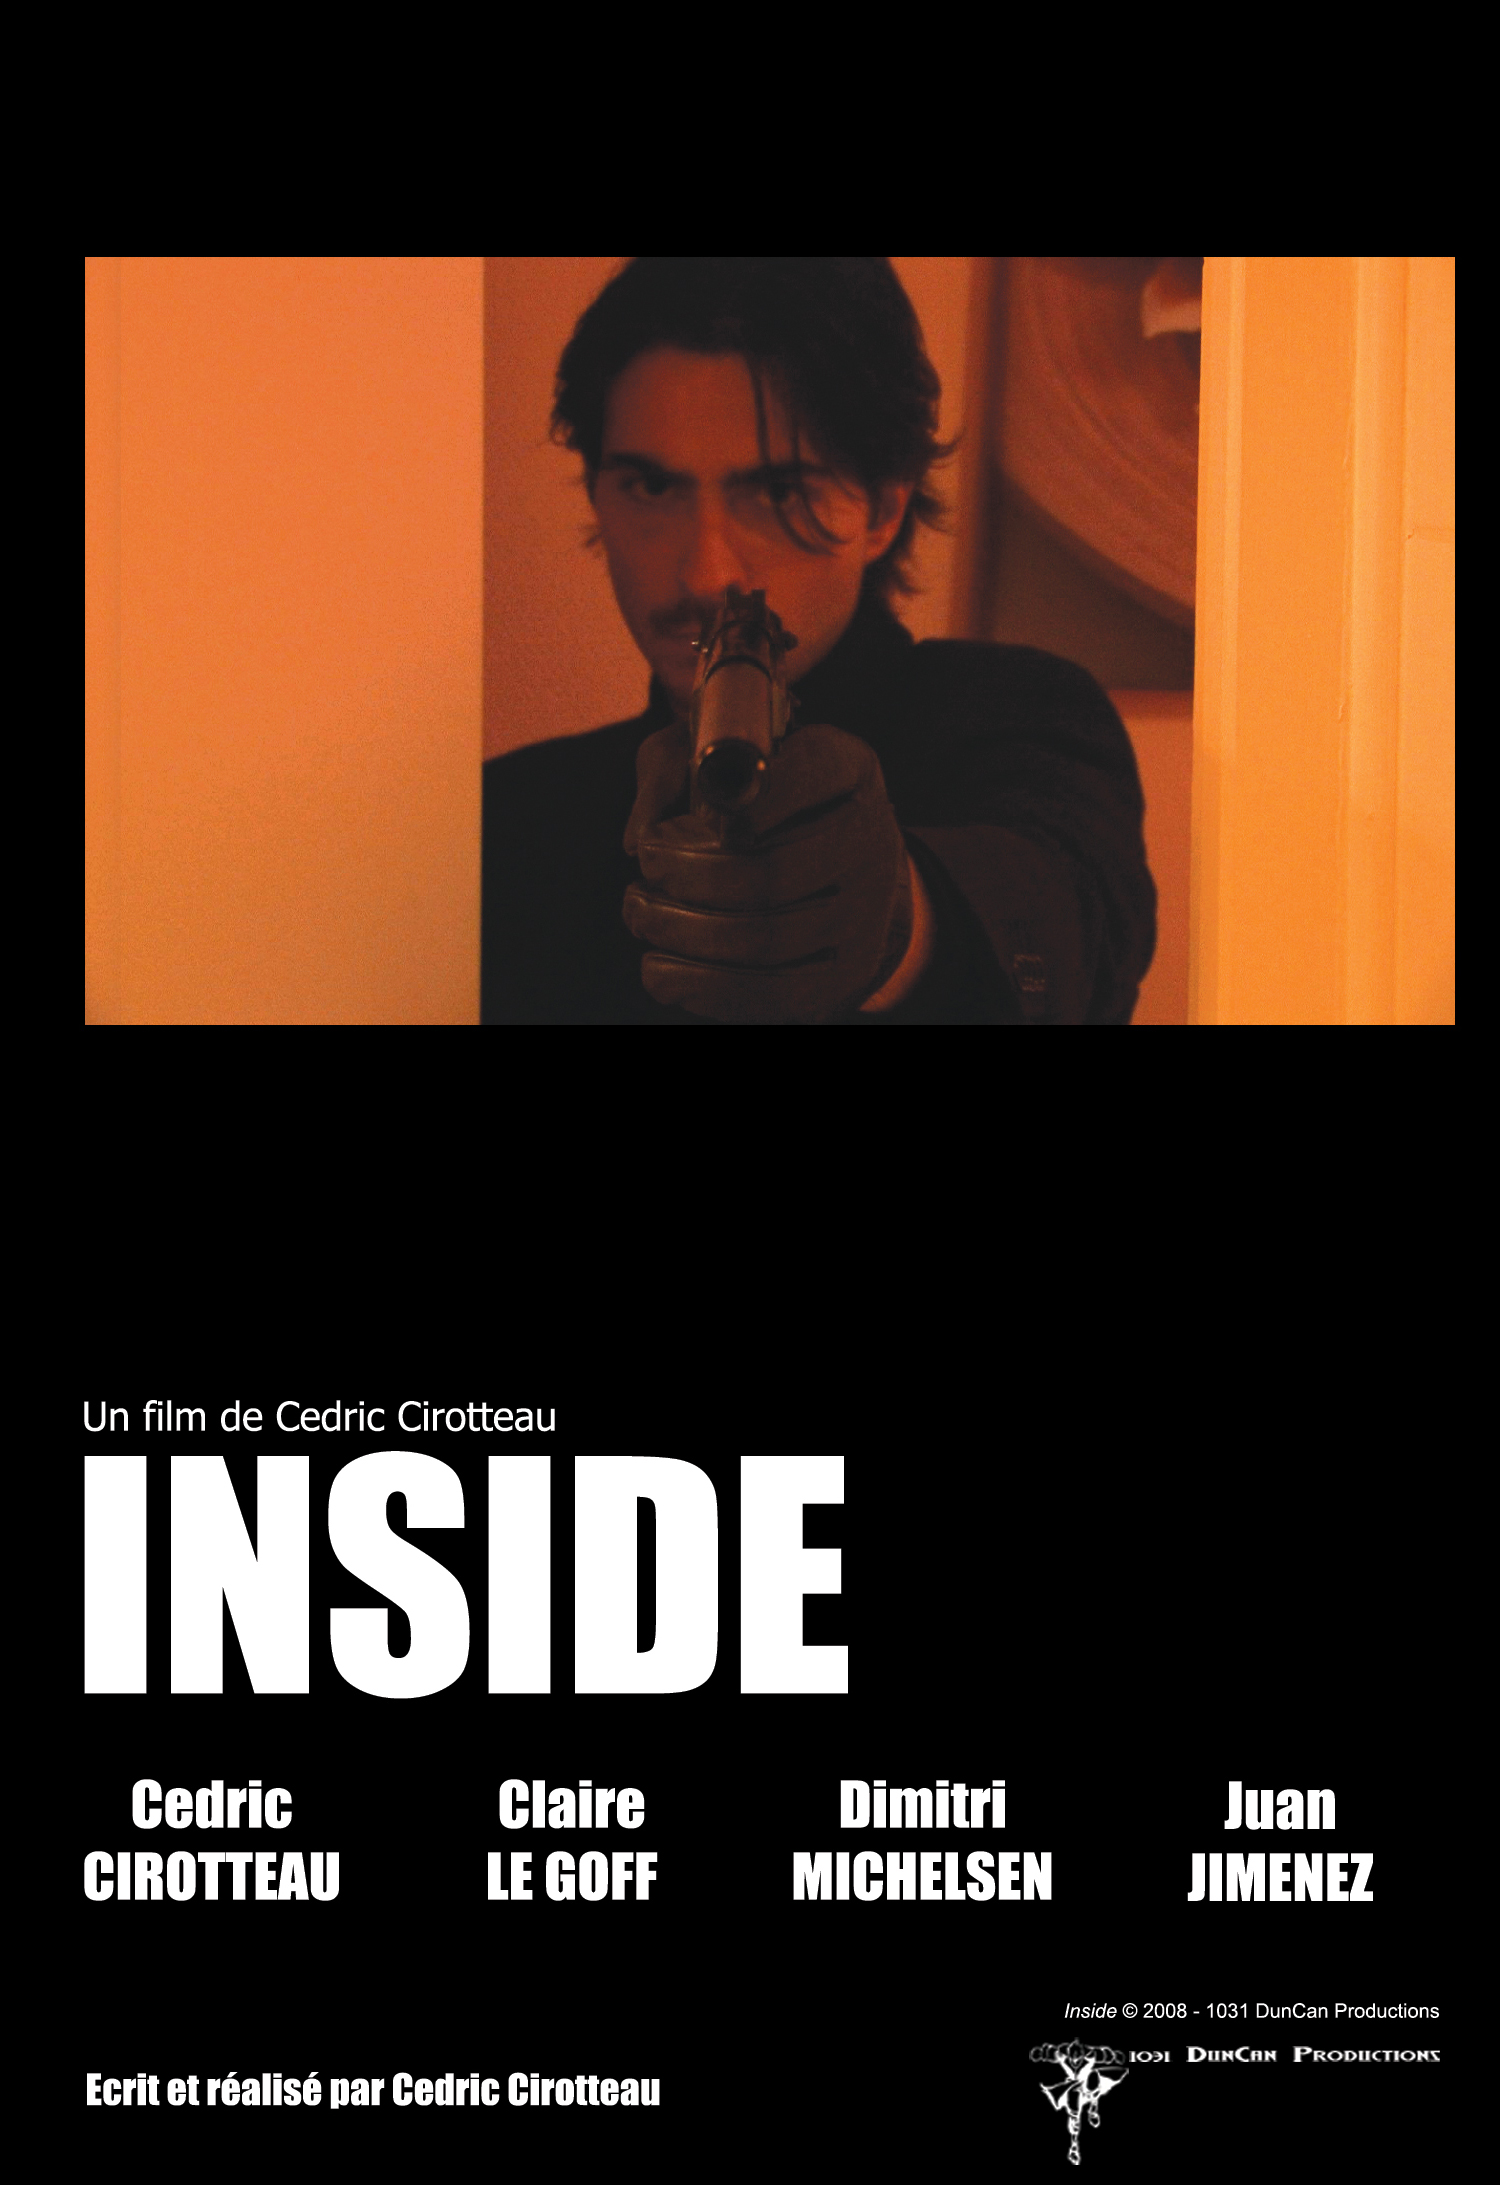 Dimitri Michelsen, Florent Saclier, Juan Jimenez, Cedric Cirotteau and Claire Le Goff in Inside (2008)